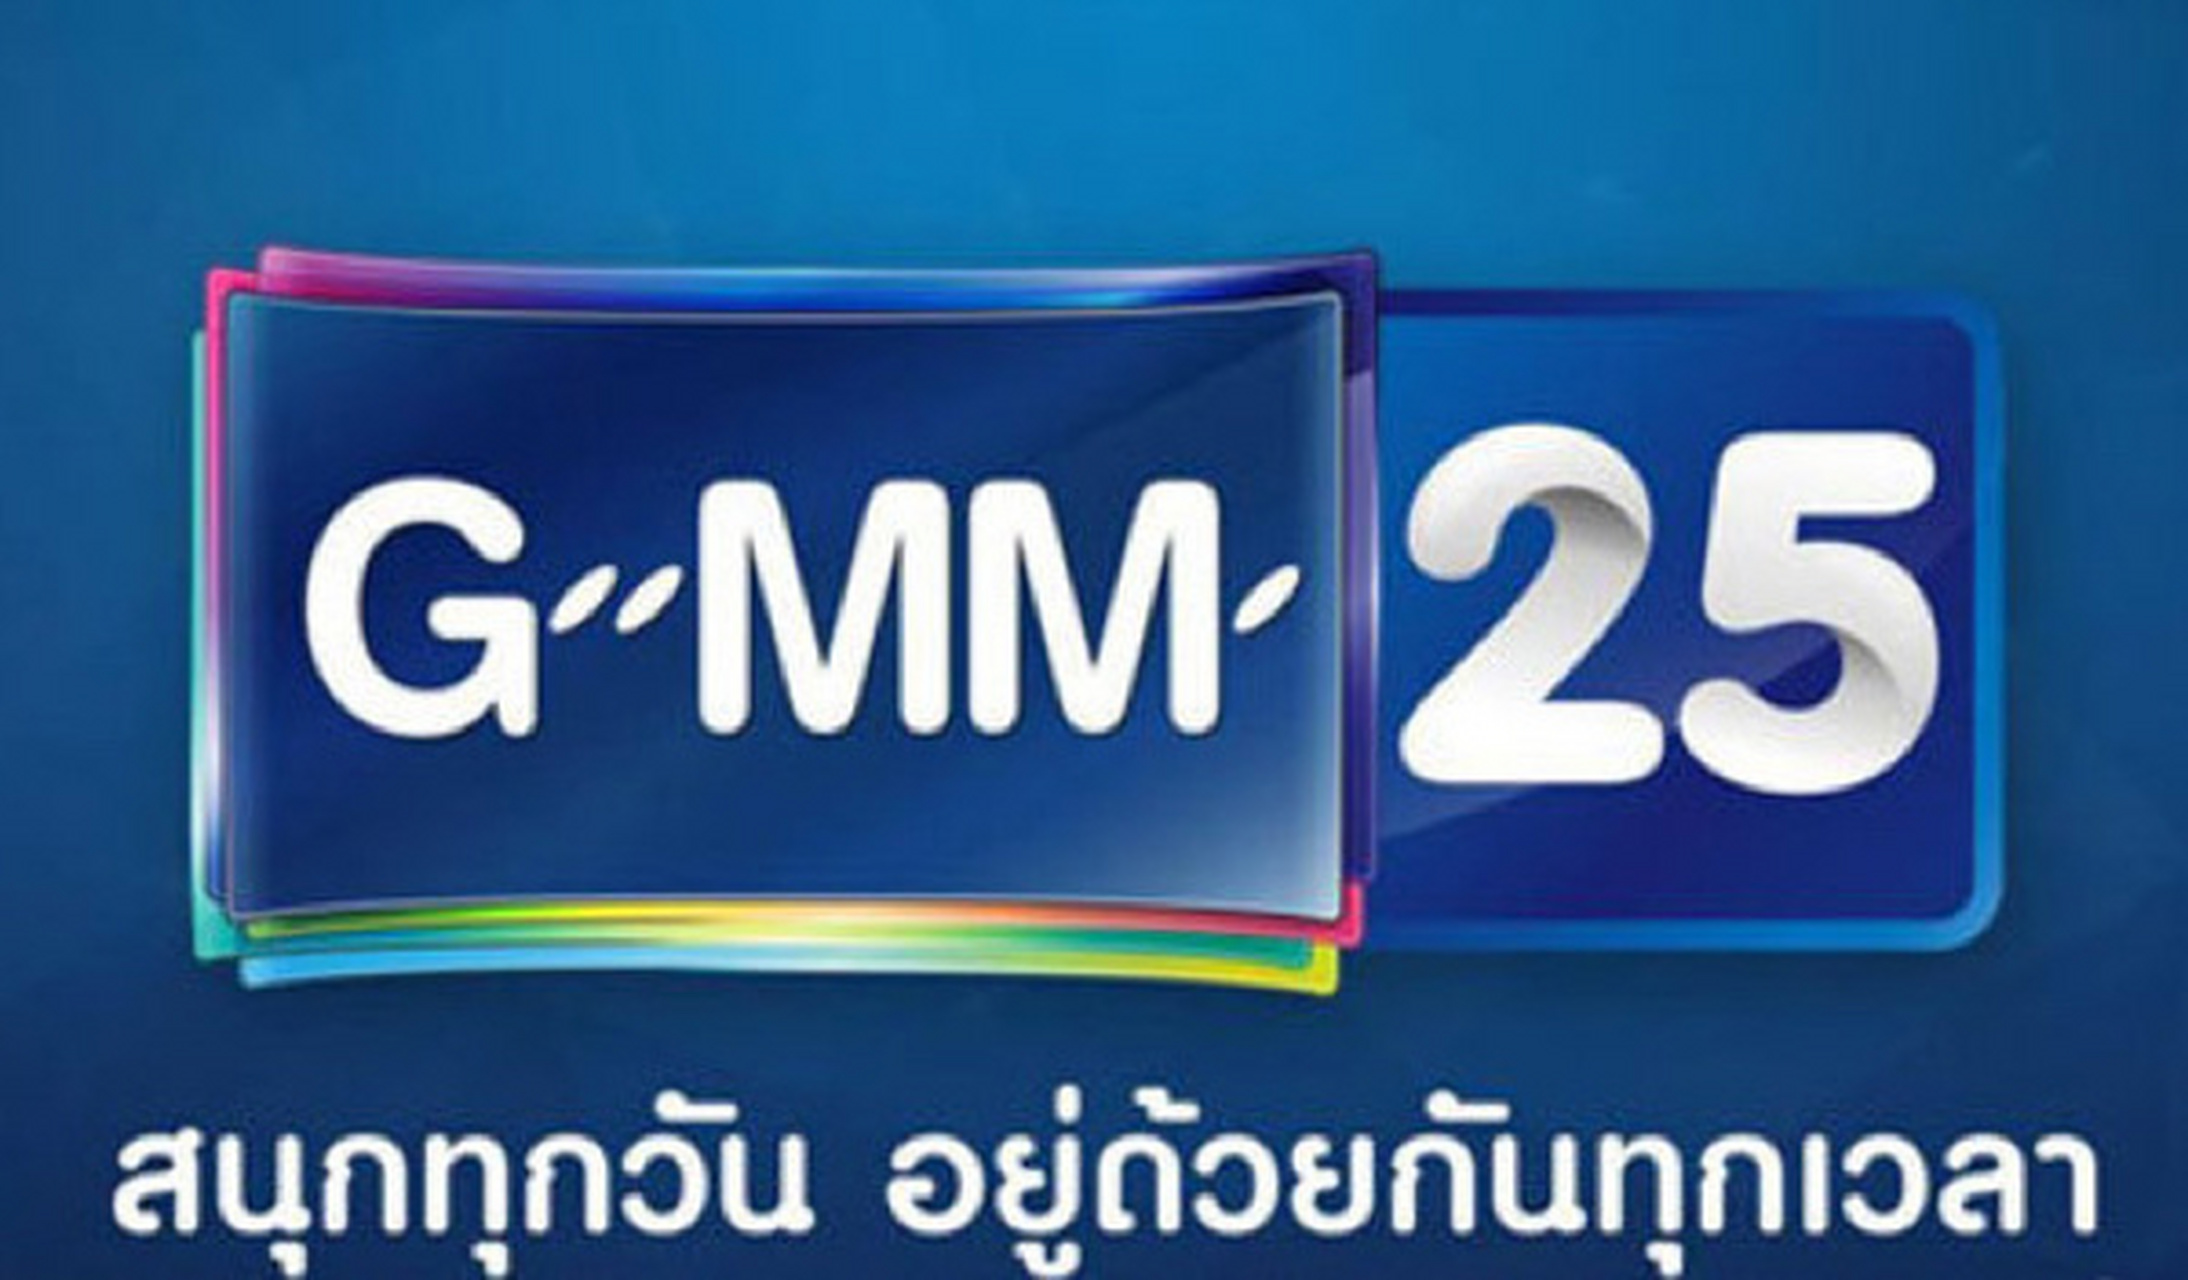 泰国gmm25台图片